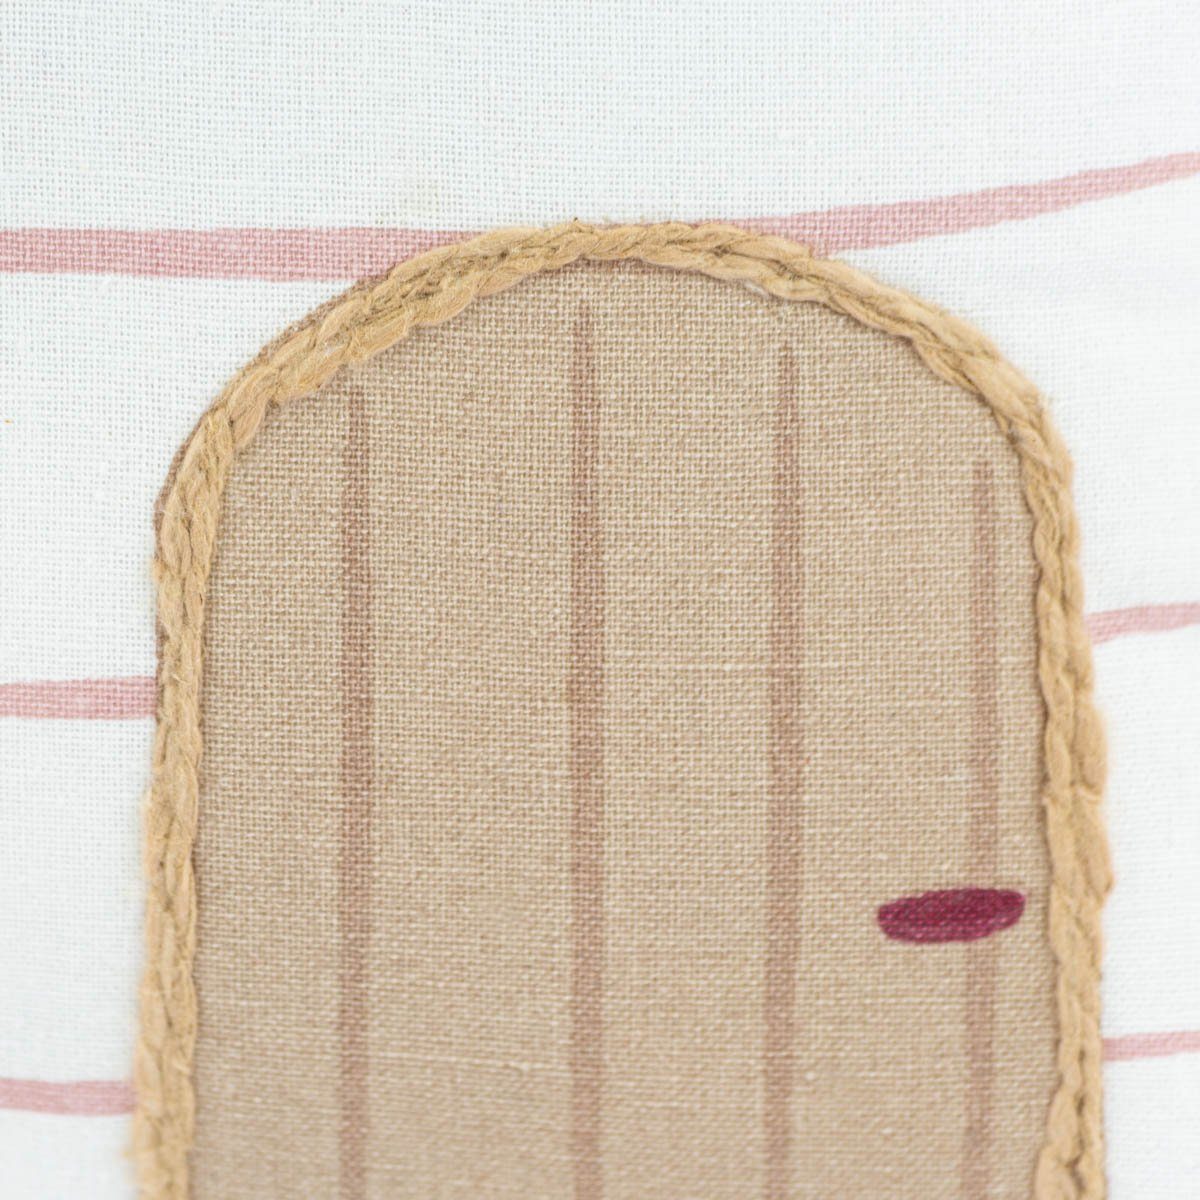 SCHÖNER LEBEN. Dekokissen Kinderkissen Baumwolle Haus 40x38cm rot rosa weiß aus